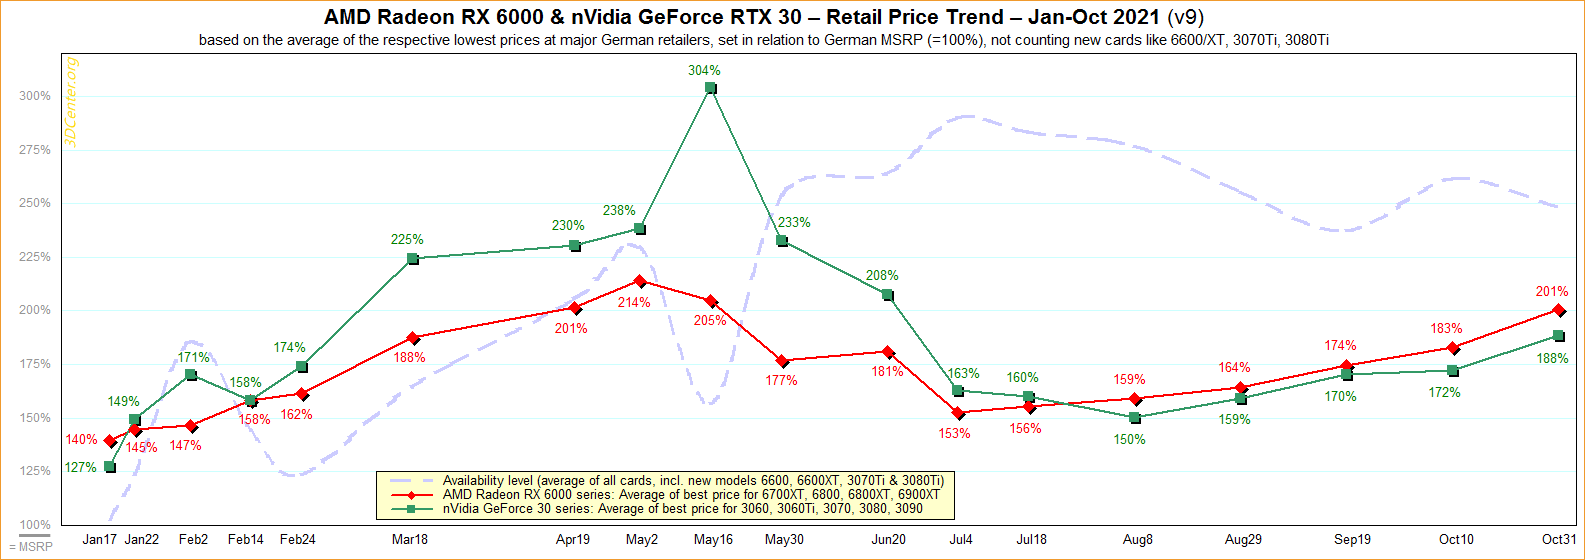 amd-nvidia-retail-price-trend-2021-v9